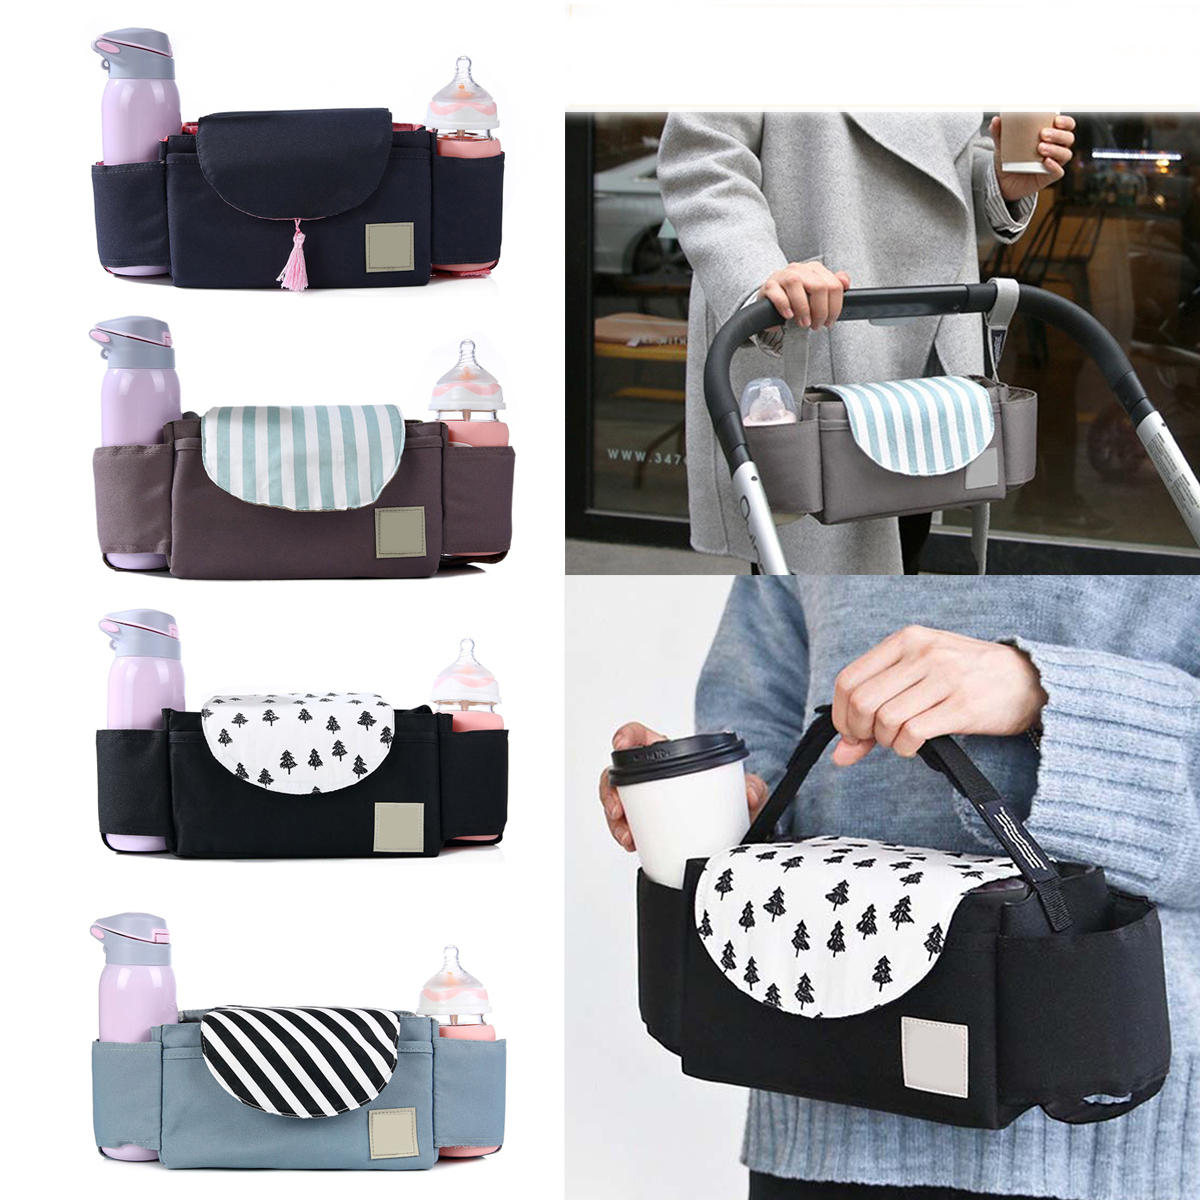 Υπαίθρια ταξίδια Baby Strollers Storage Bag Organizer Pram Buggy Pushchair Cup Diaper Hanging Pouch